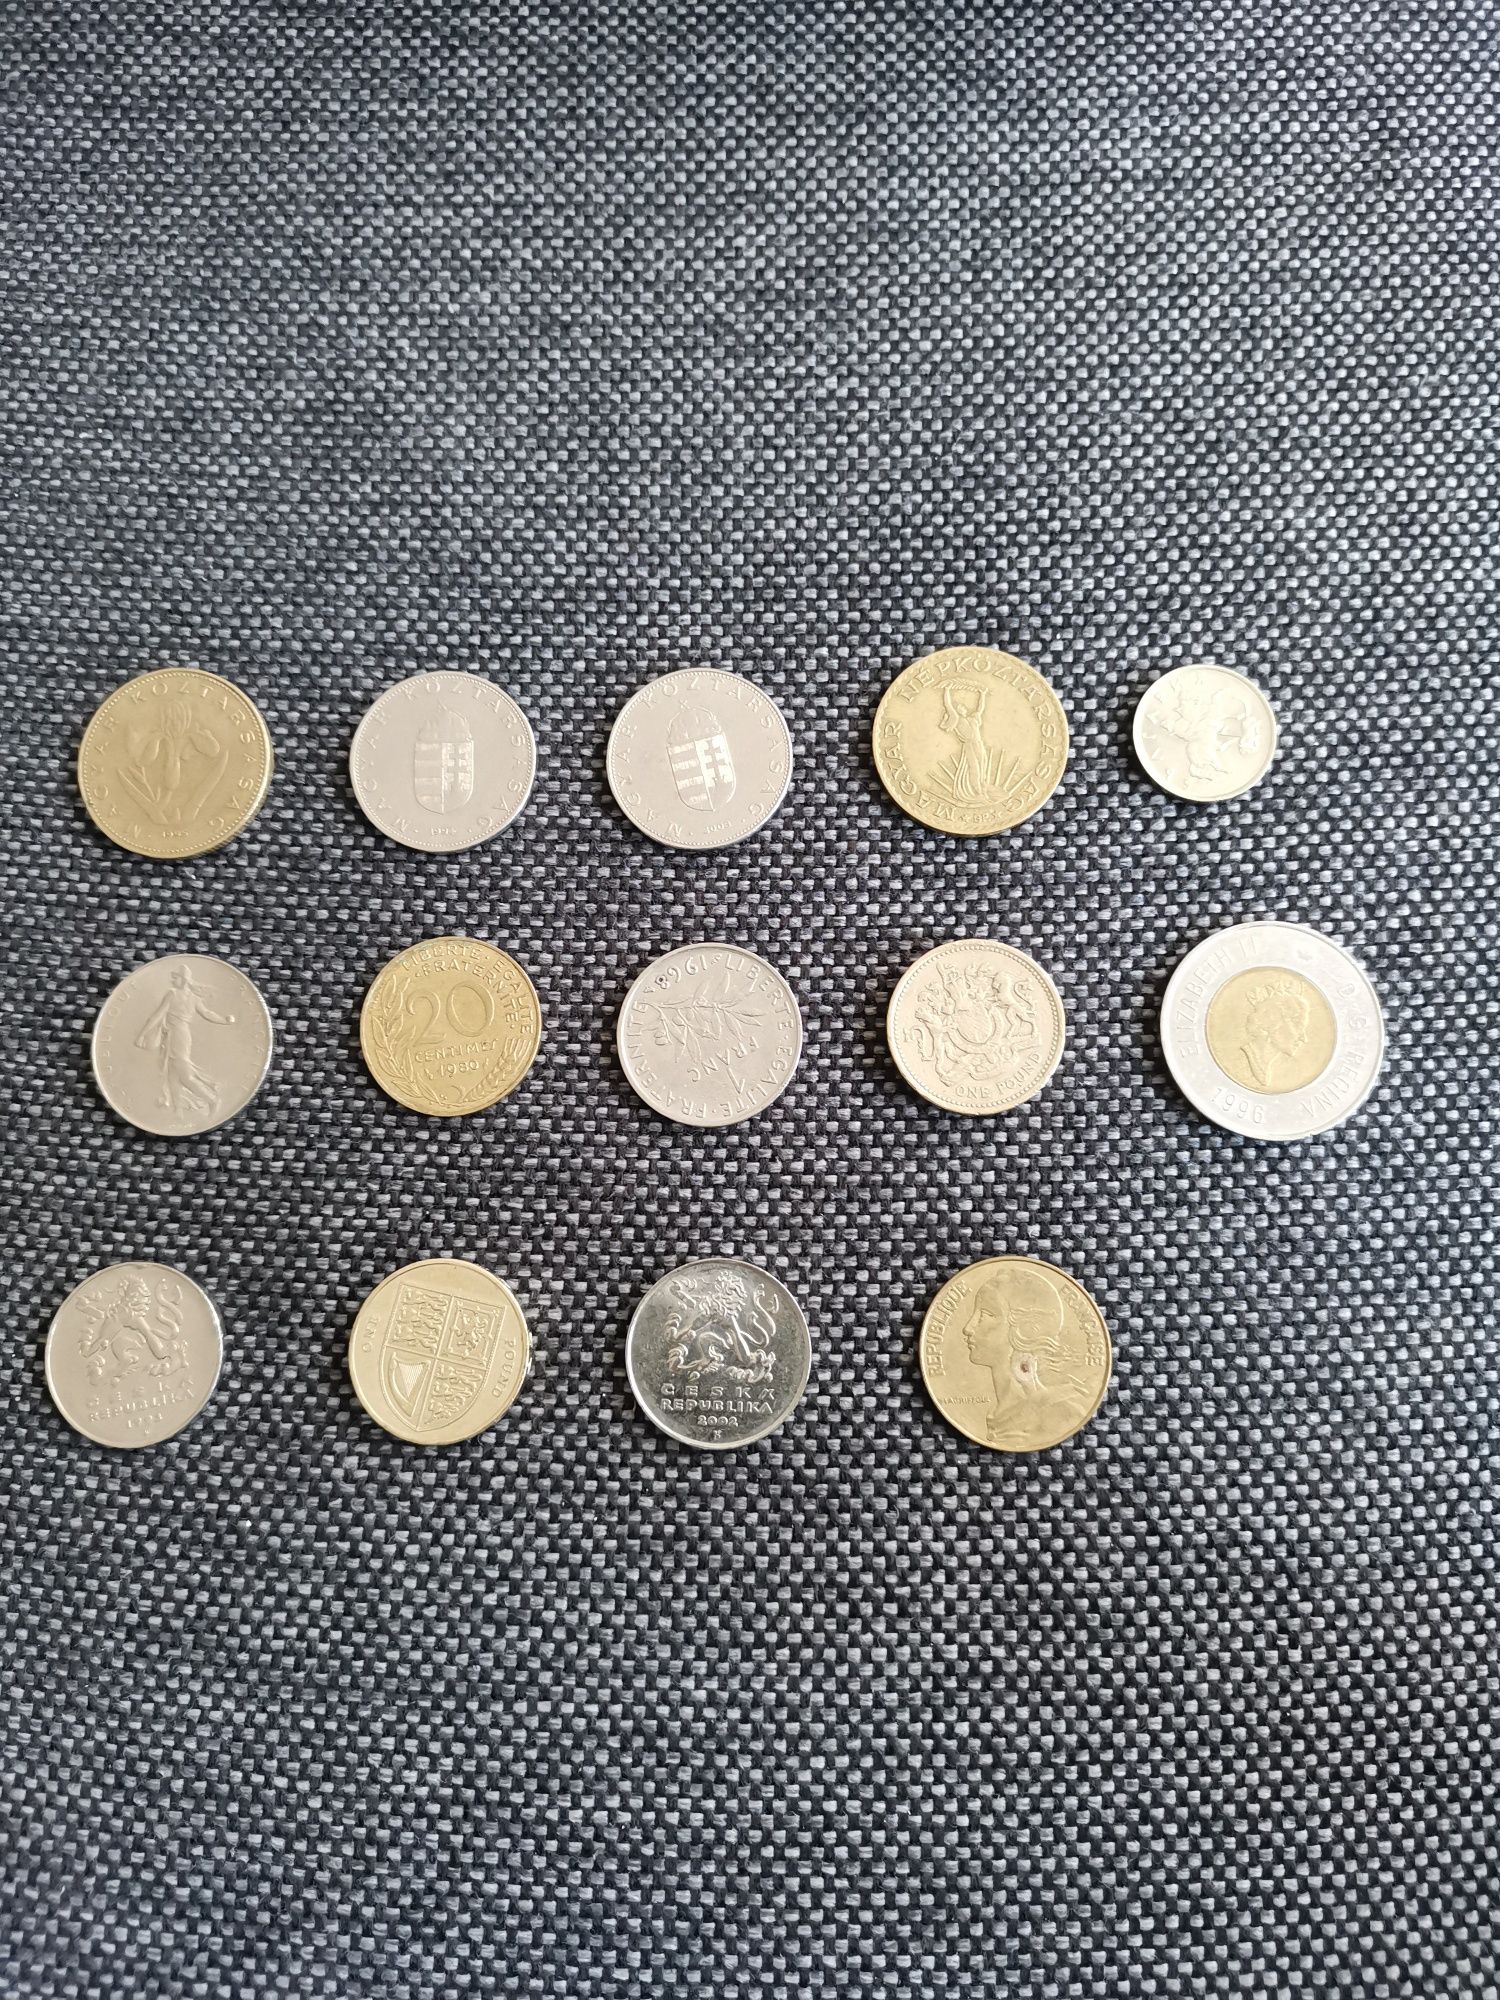 Monede din diferite țări pentru colecționari.